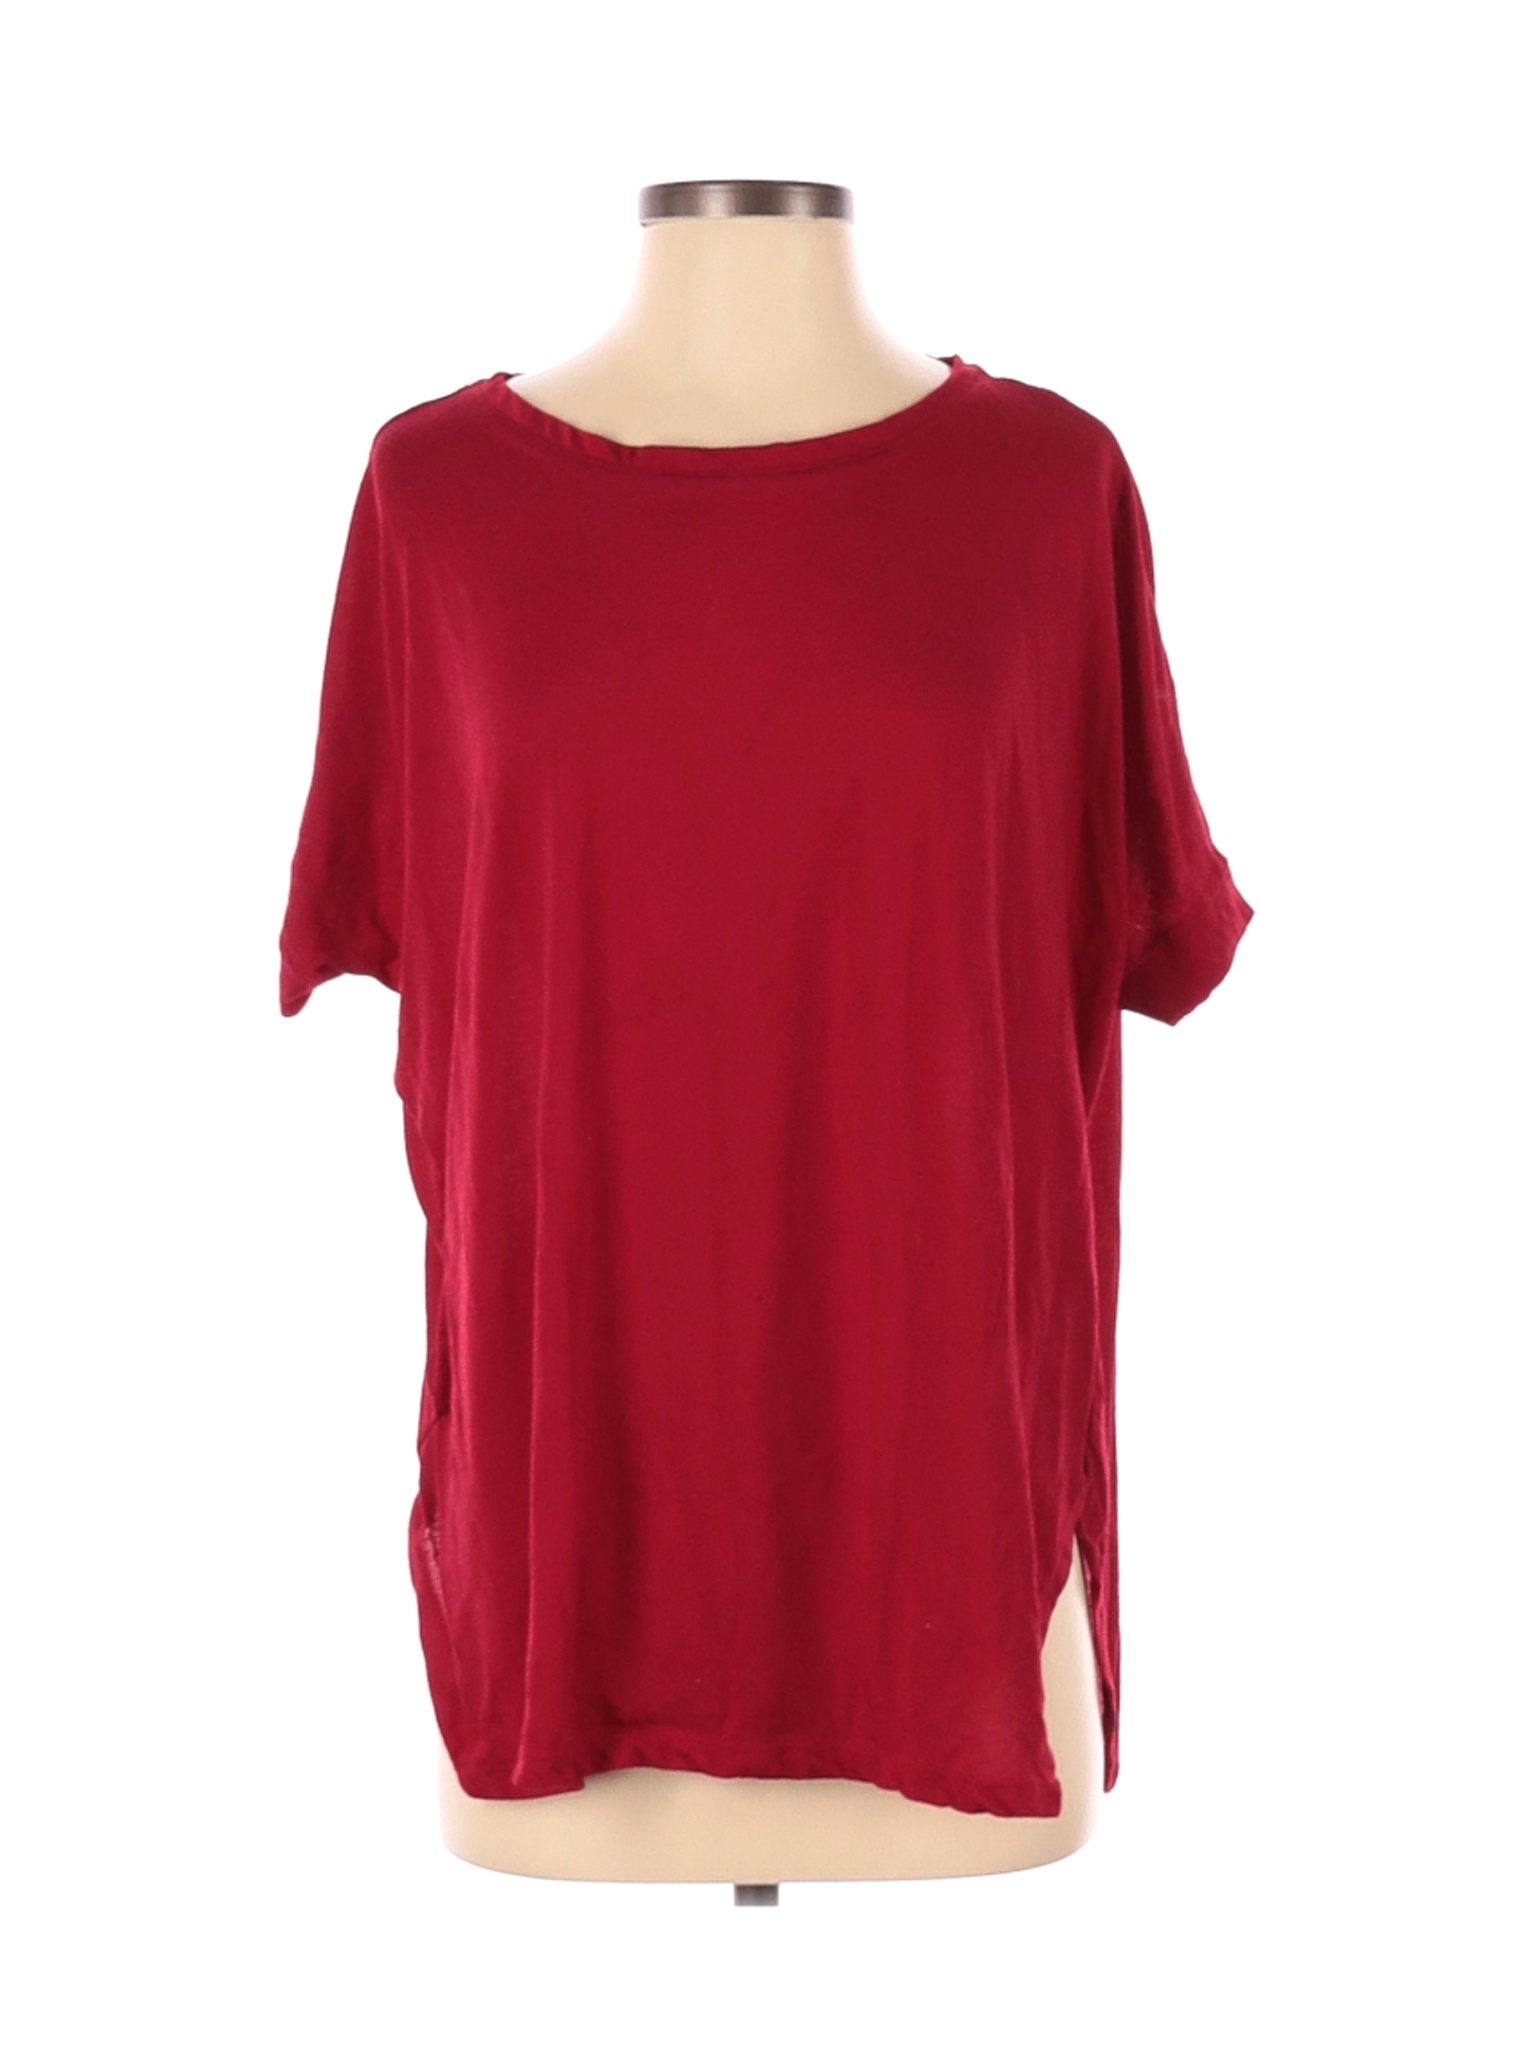 H&M Women Red Short Sleeve T-Shirt XS | eBay